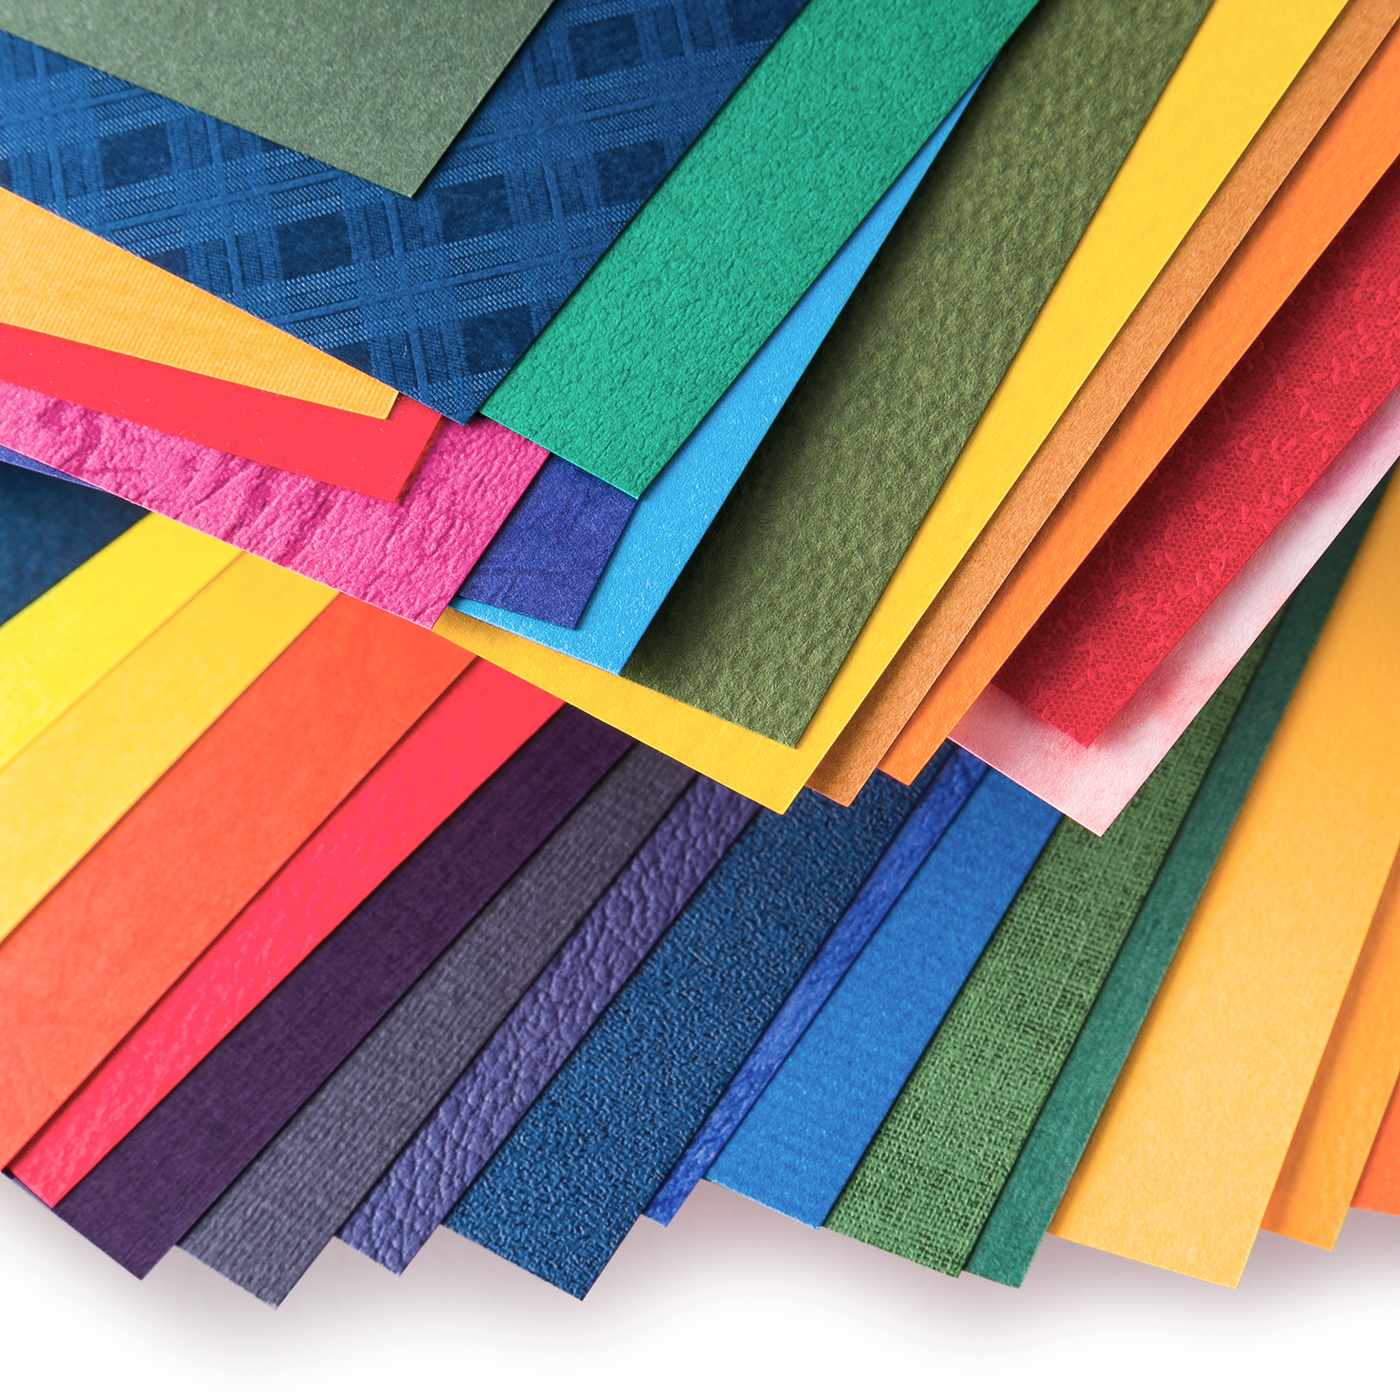 500色の色えんぴつ TOKYO SEEDS 紙の専門商社 竹尾が選ぶ 500 